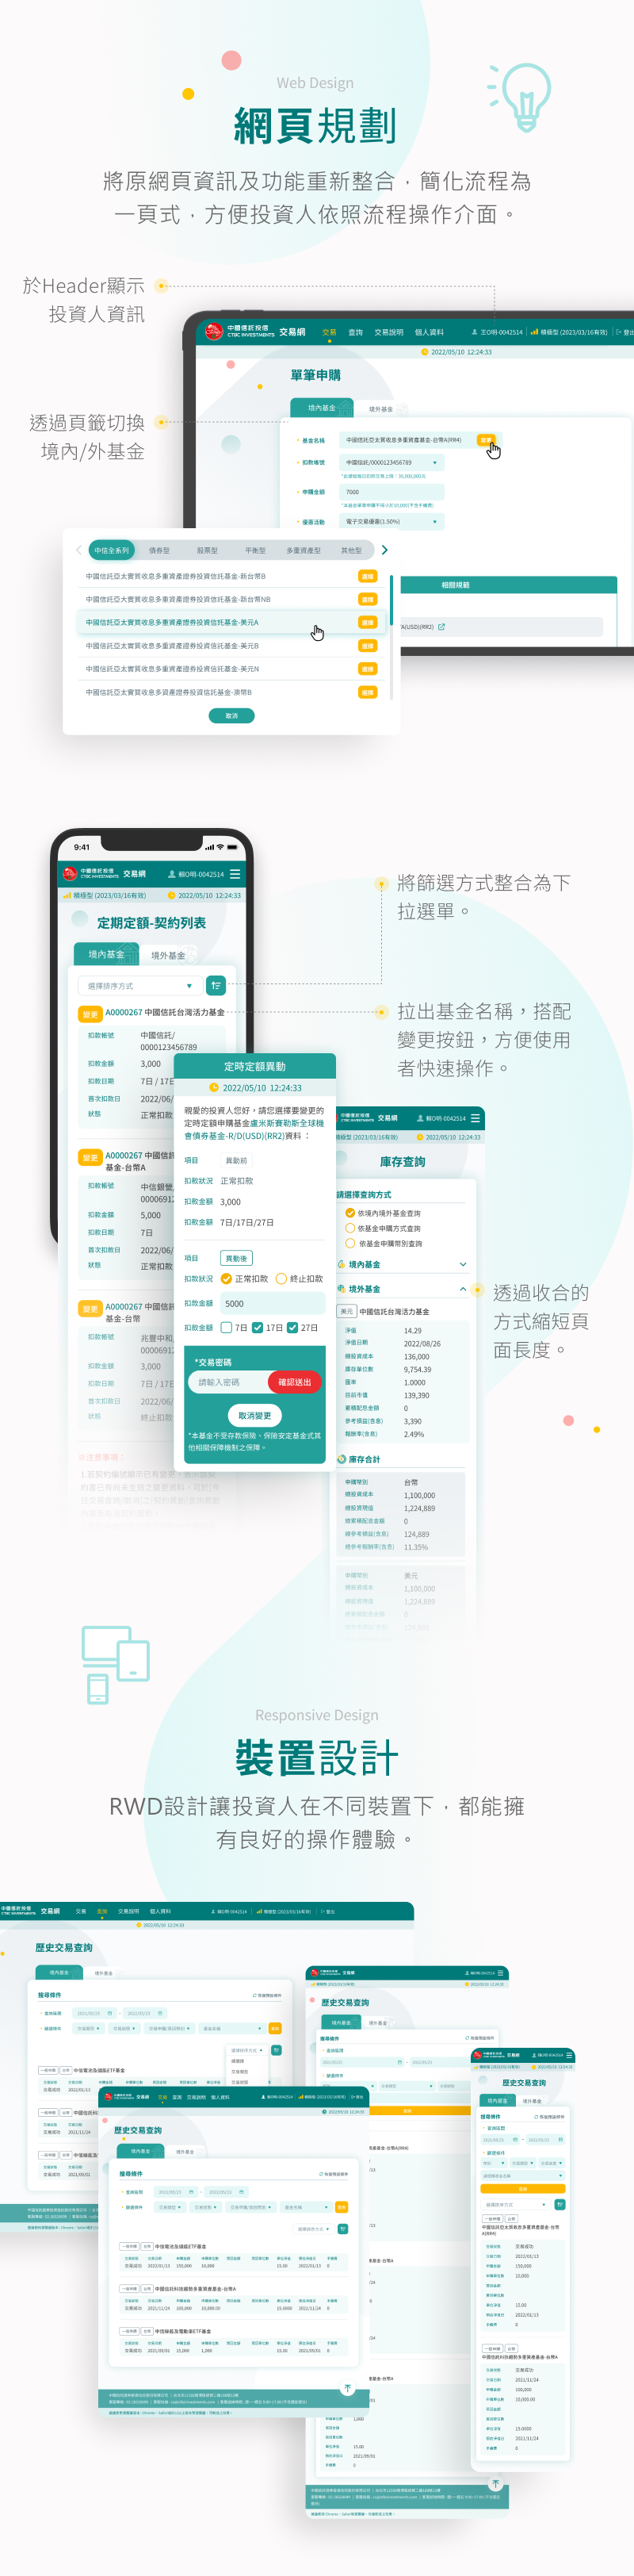 中國信託投信 基金交易 網站改版 網頁設計